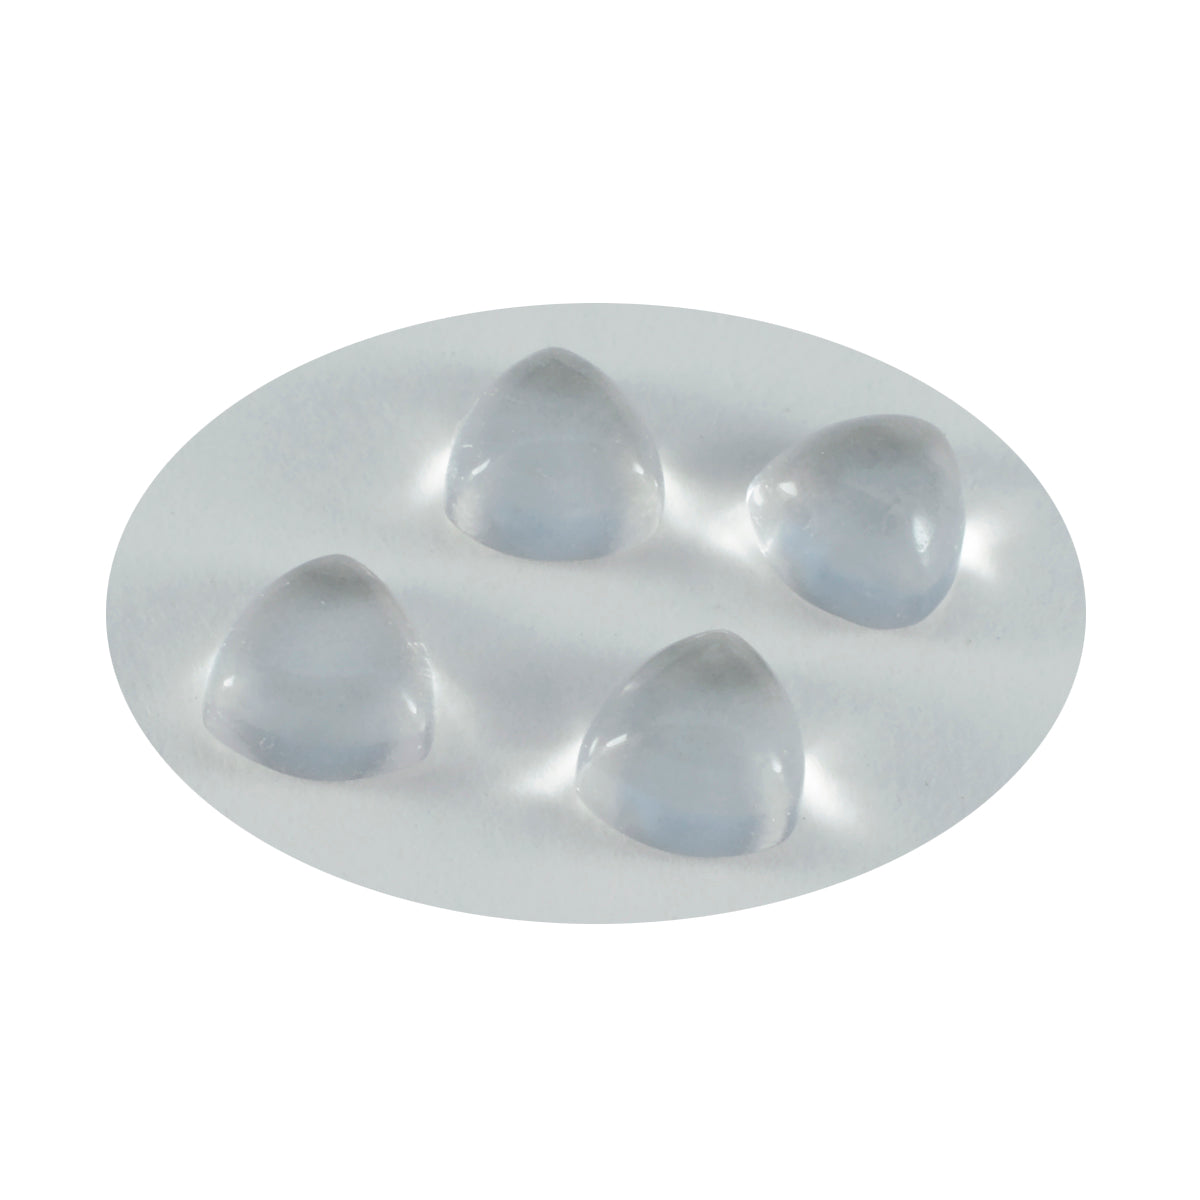 Riyogems – cabochon de quartz en cristal blanc, 7x7mm, en forme de trillion, pierres précieuses de qualité surprenante, 1 pièce